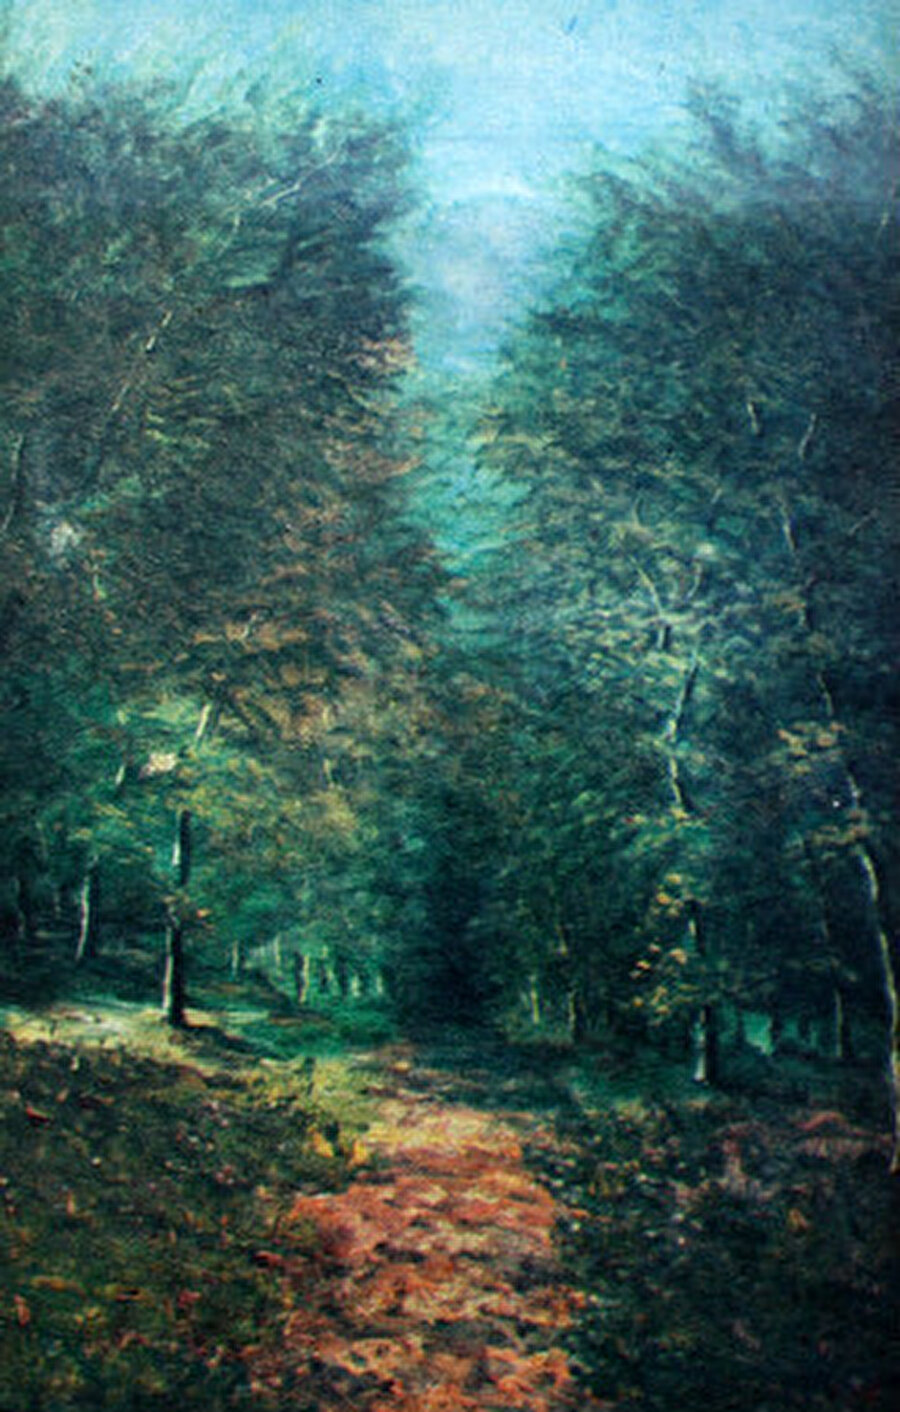 Ormanda Yol adlı eserini 1906 yılında bütün içselliği ve durgunluğuyla ortaya dökmüştür.